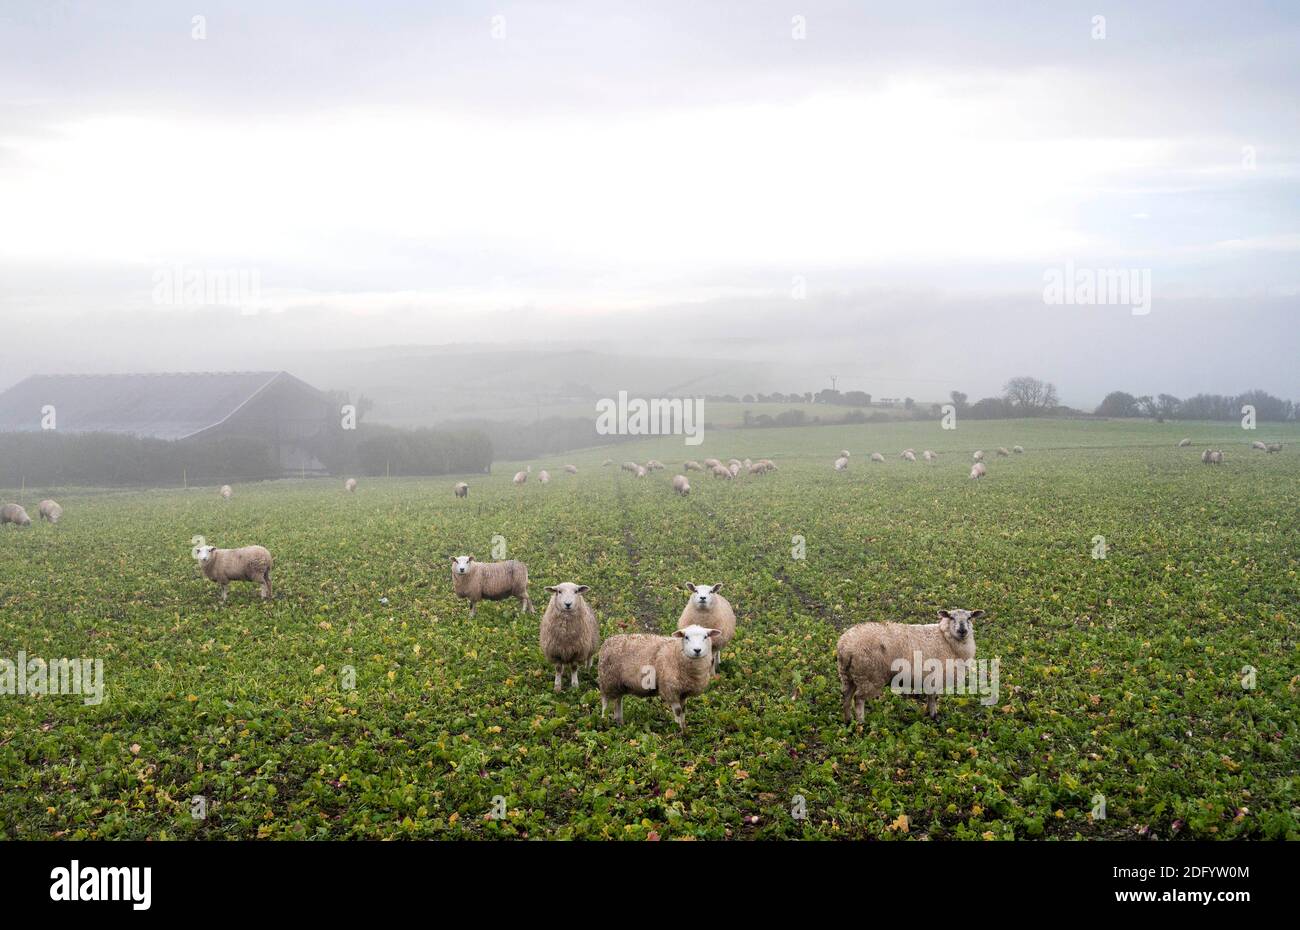 Brighton Reino Unido 7 de diciembre de 2020 - Sheep en la niebla en una granja cerca de Devils Dyke en el camino de los Downs del Sur justo al norte de Brighton. Se ha pronosticado que la niebla espesa permanecerá en algunas partes de Gran Bretaña hoy haciendo que las condiciones de conducción sean difíciles: Crédito Simon Dack / Alamy Live News Foto de stock